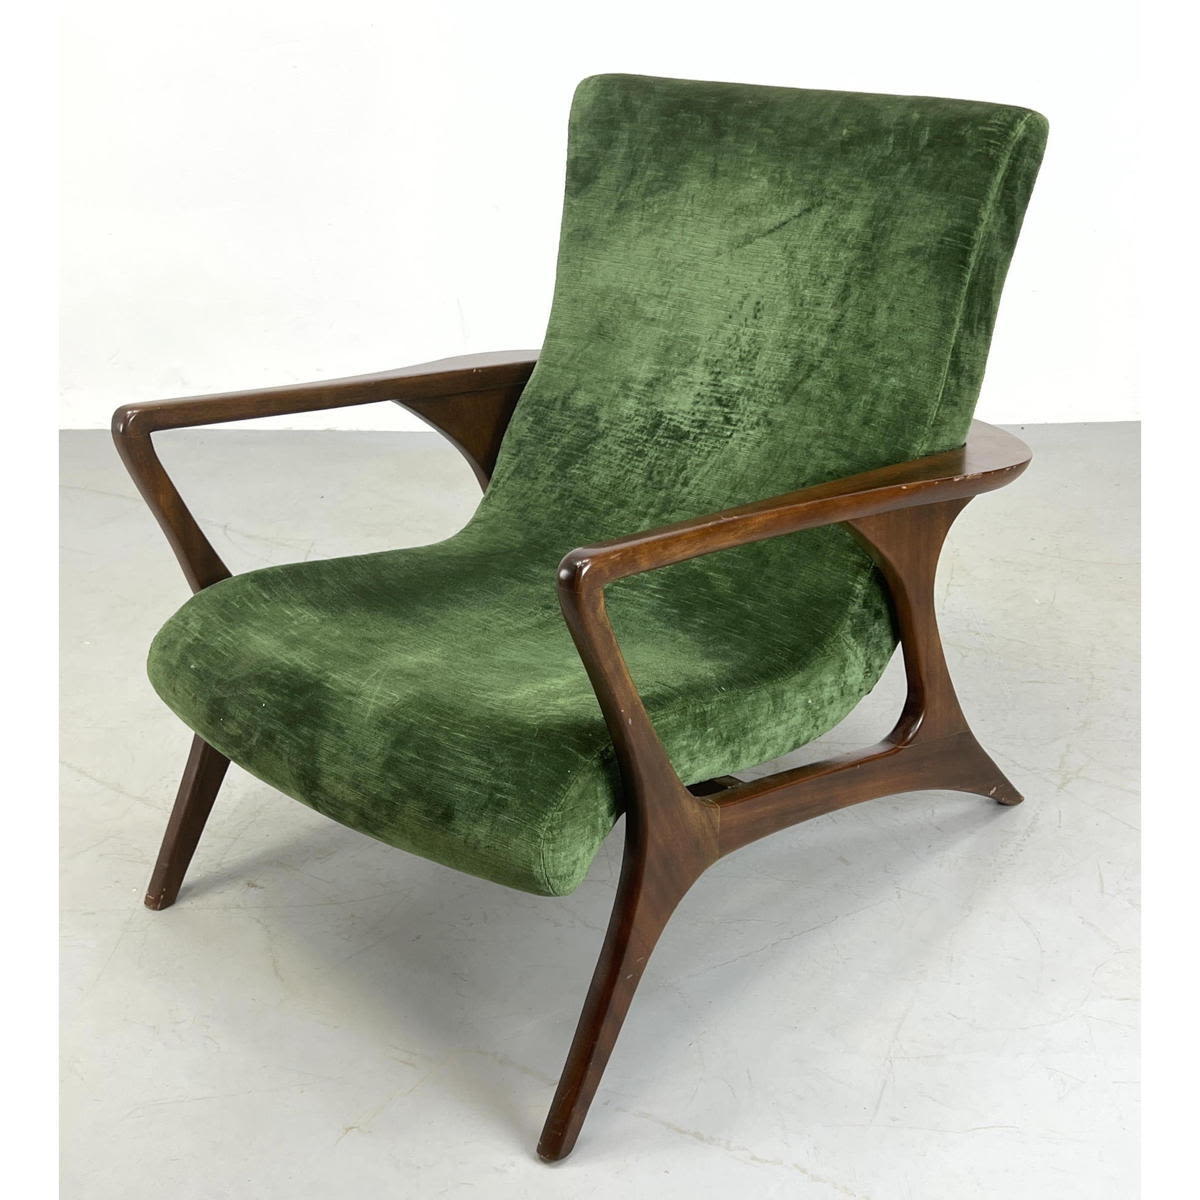 Vladimir Kagan Lounge Chair. Green